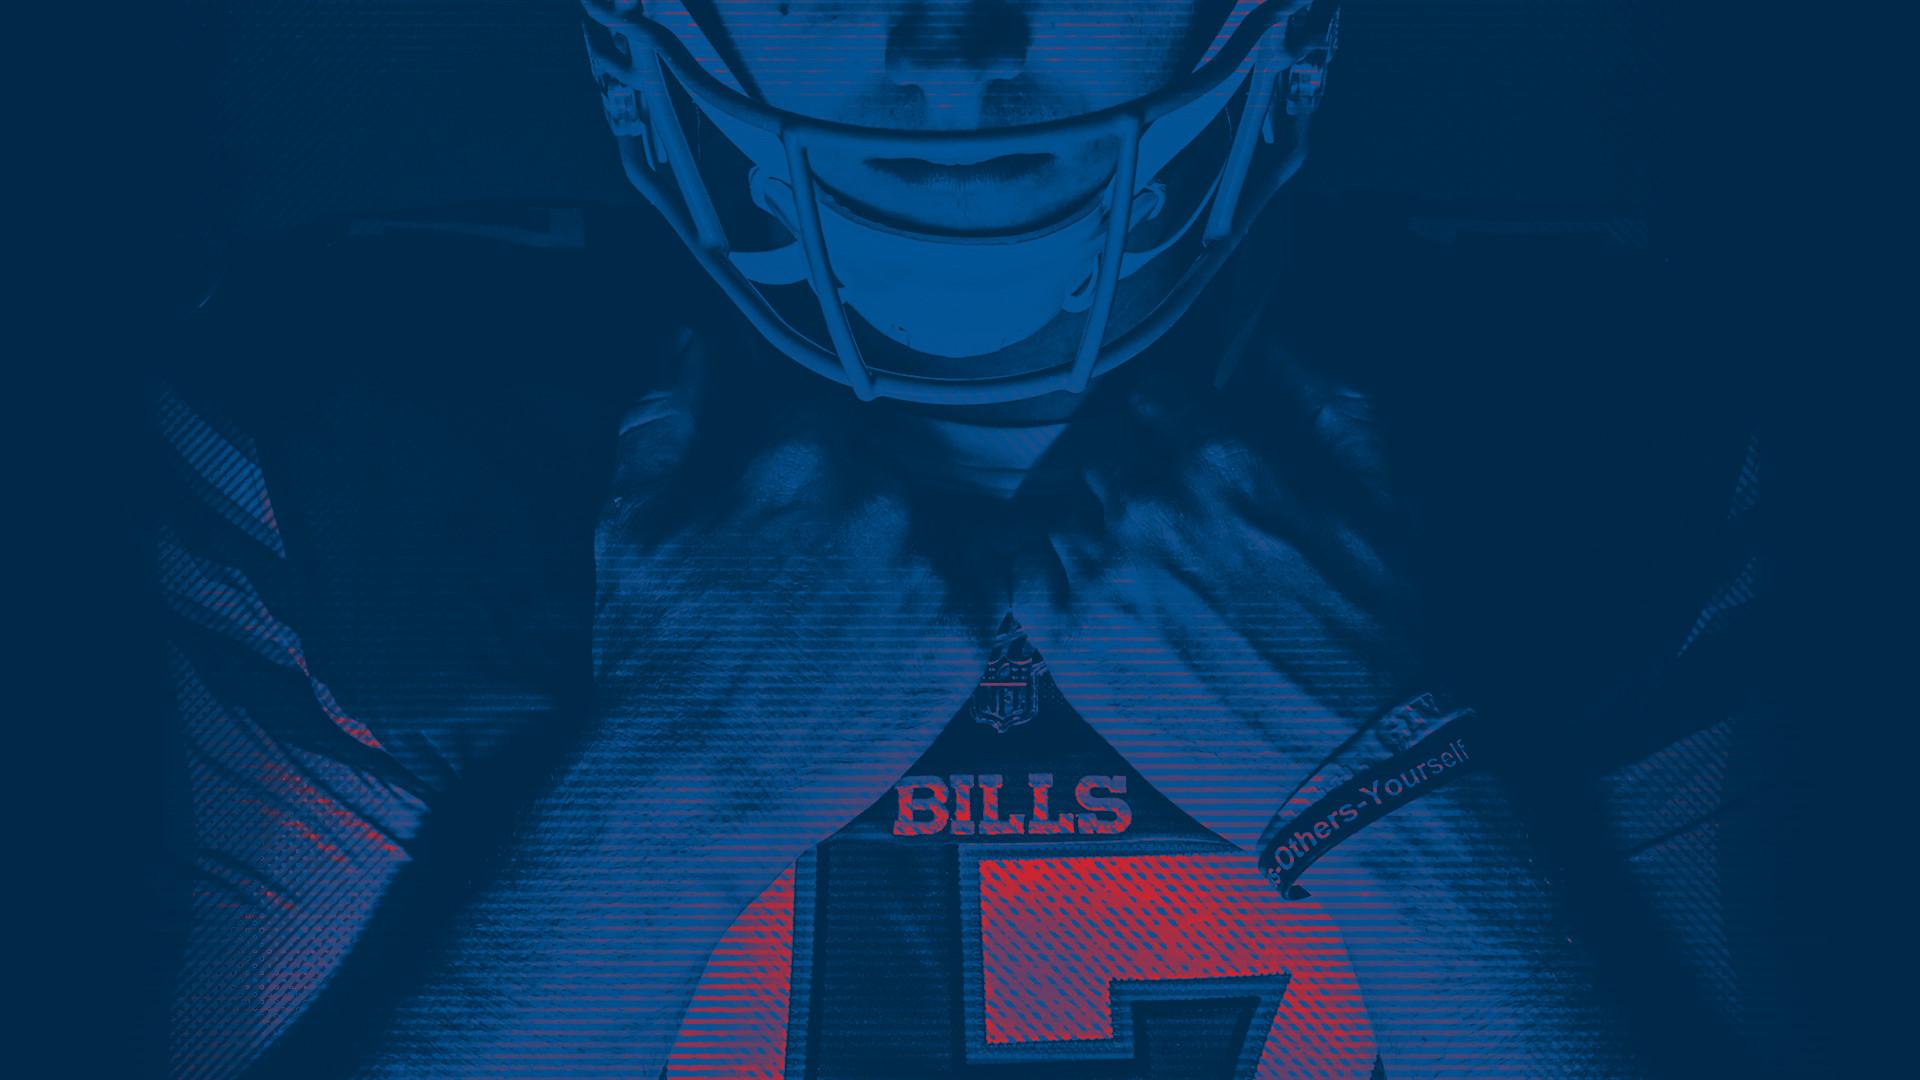 Buffalo Bills Wallpaper